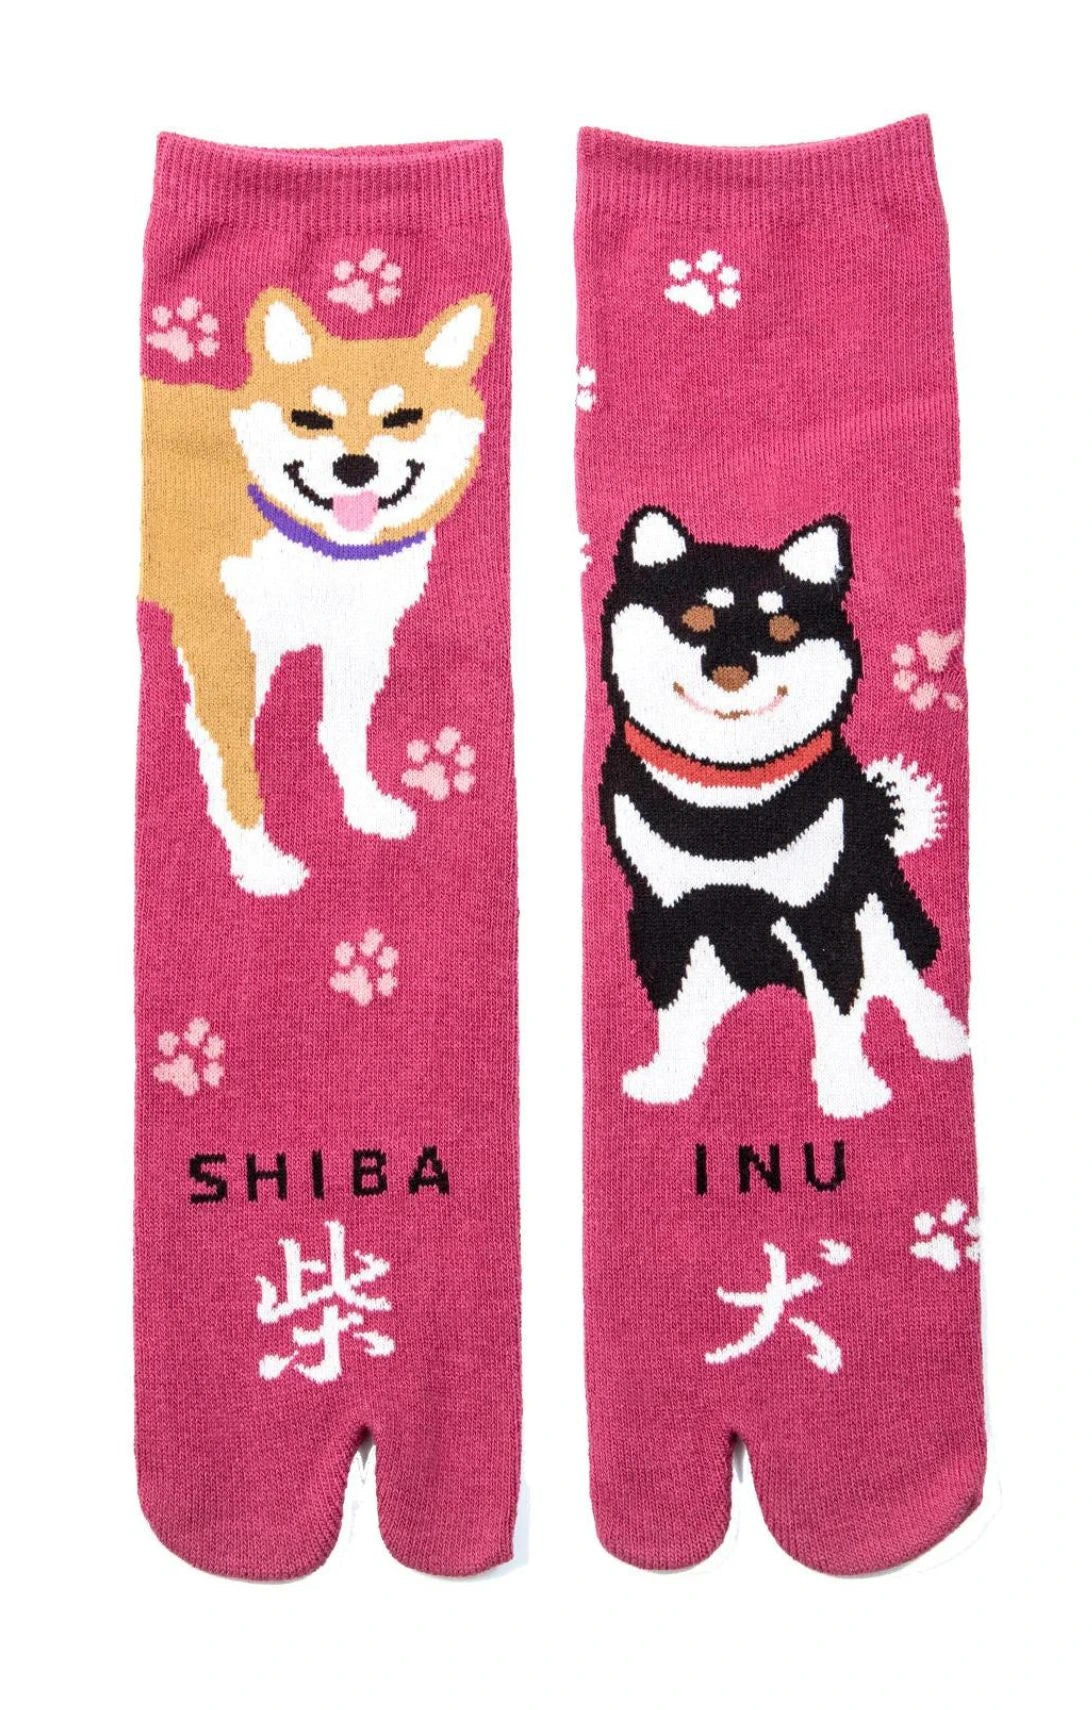 NINJA SOCKS Shiba Inu Tabi Socks Rose color, front